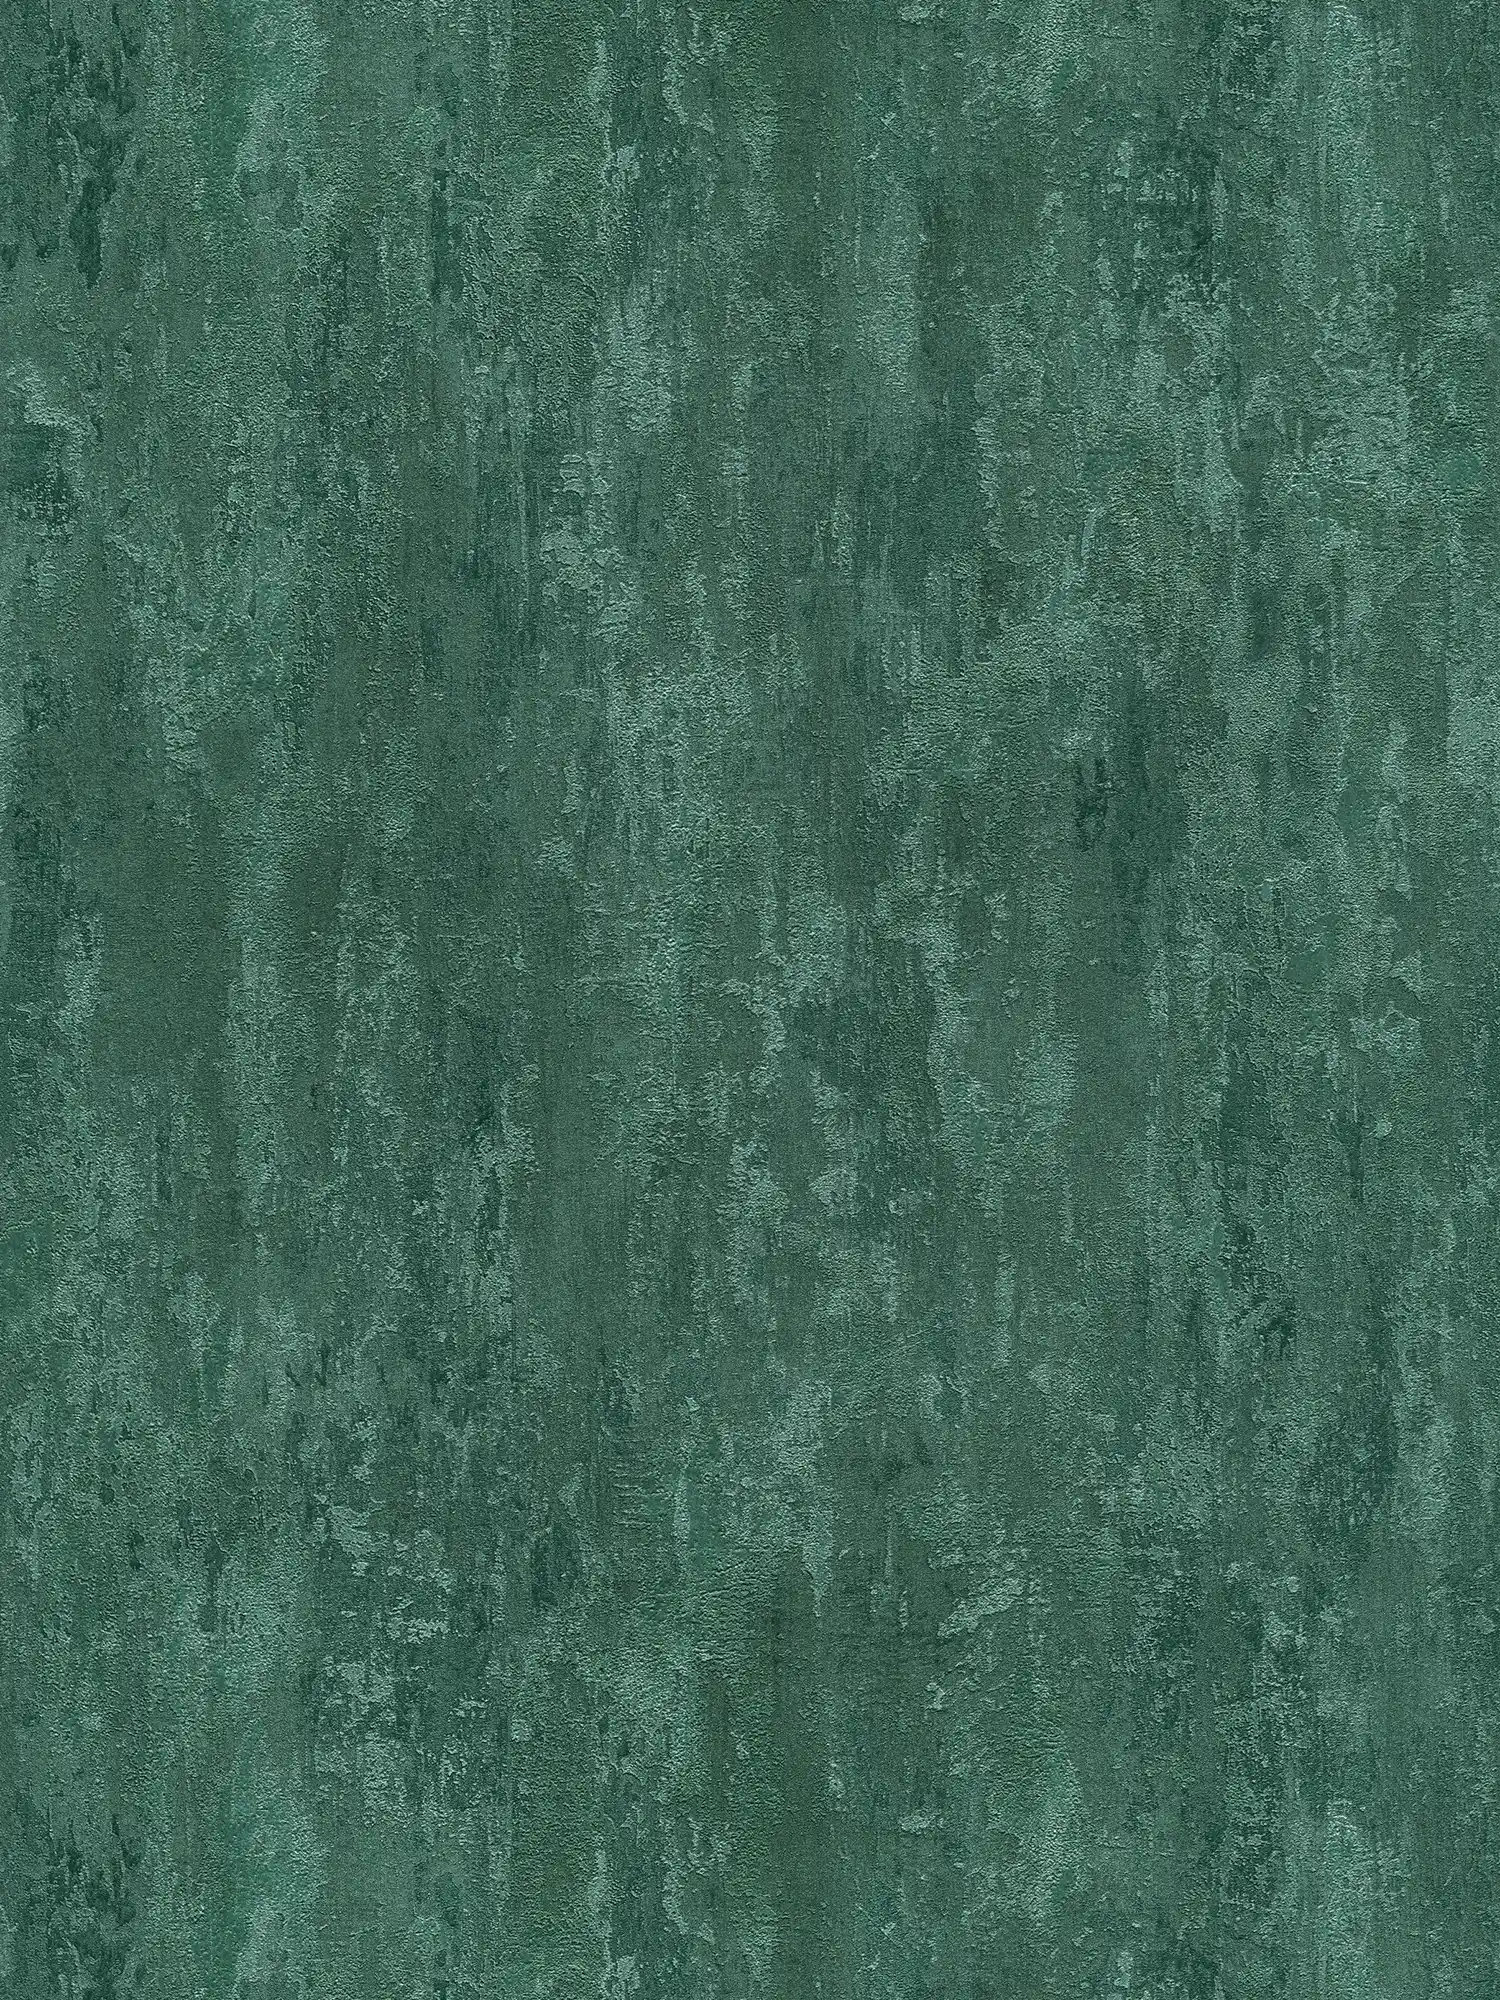         behangpapier industriële stijl met textuureffect - groen, metallic
    